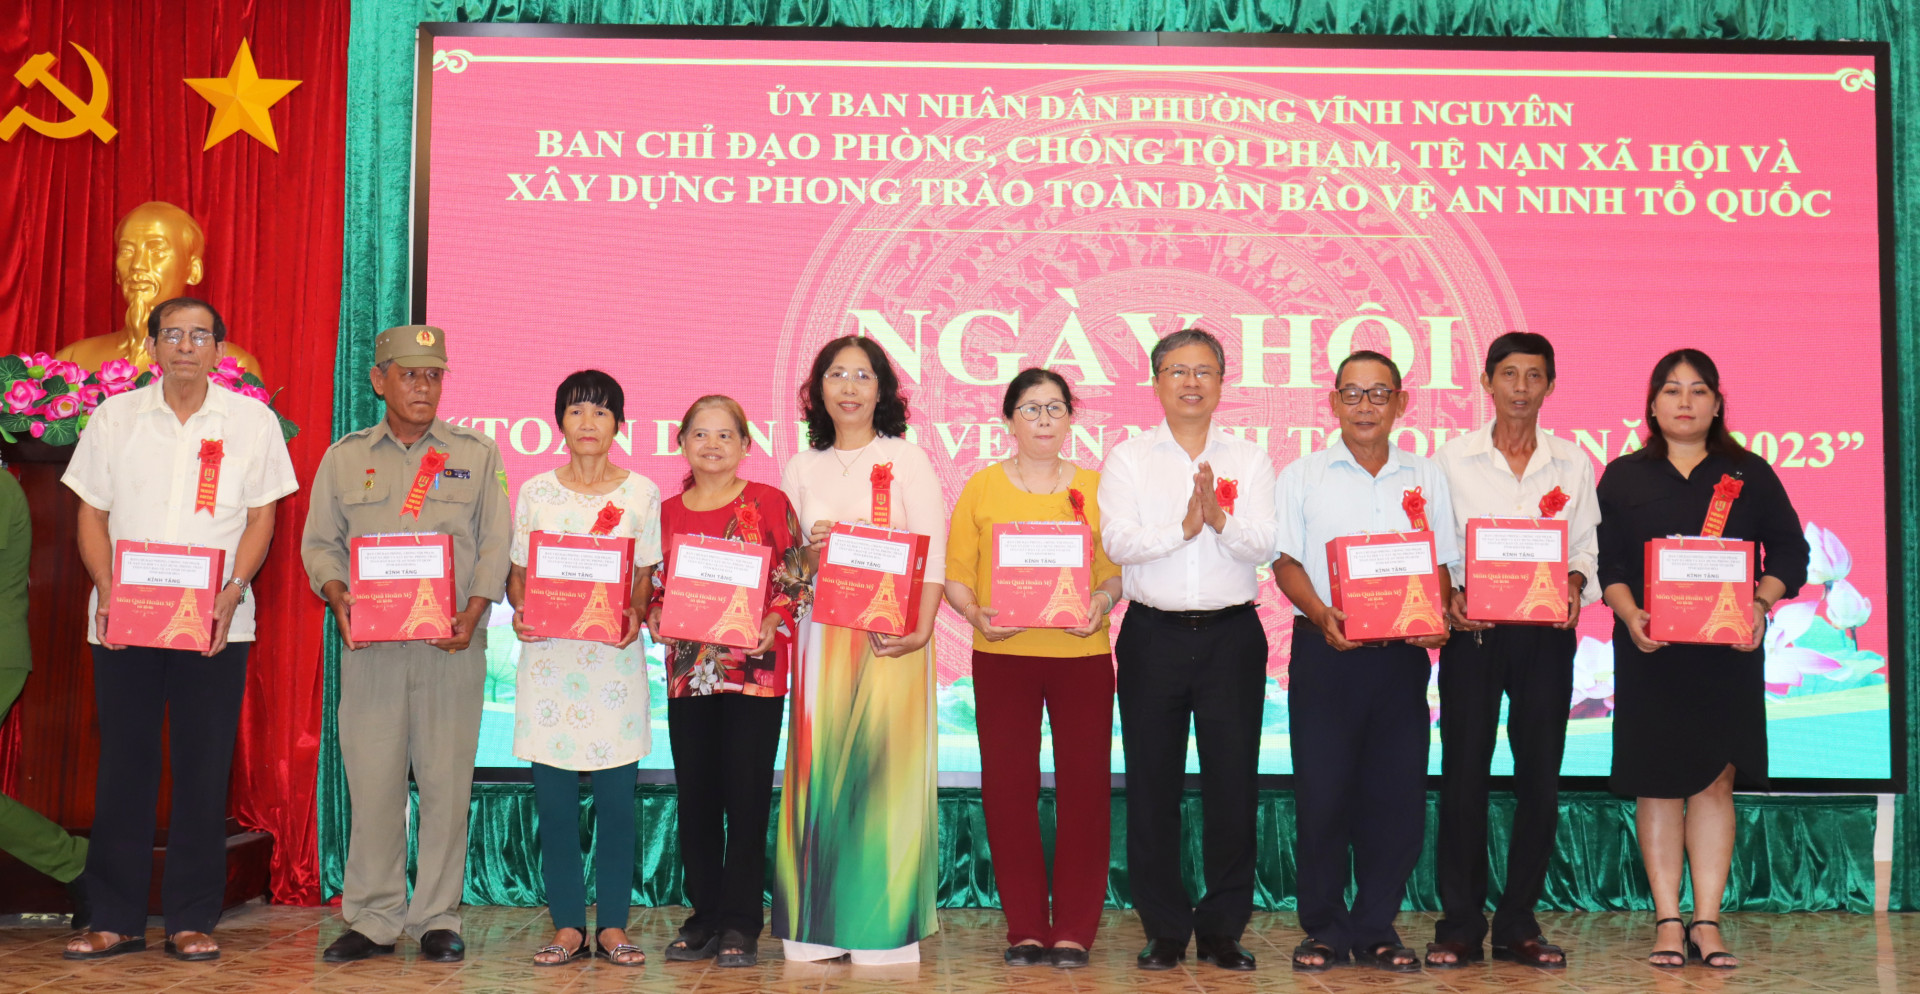 Ông Trần Hòa Nam trao quà cho các cá nhân tiêu biểu trong thực hiện phong trào toàn dân bảo vệ ANTQ của phường Vĩnh Nguyên